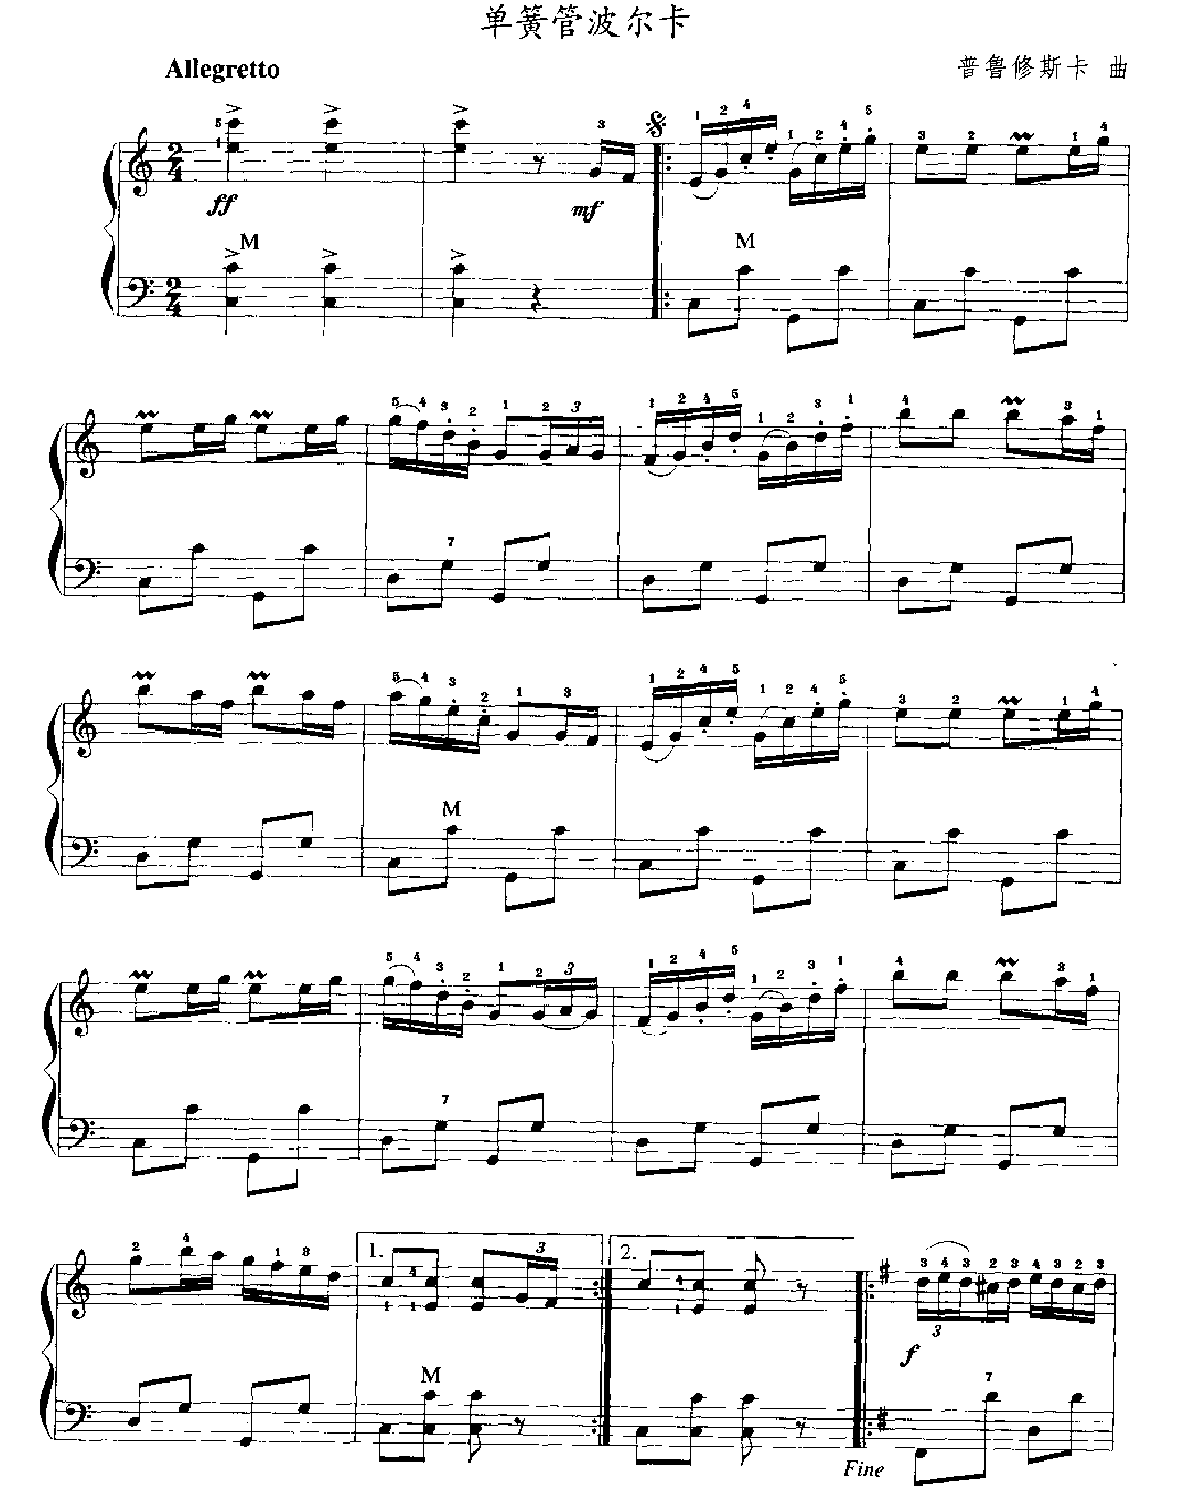 手风琴乐曲谱《单簧管波尔卡》